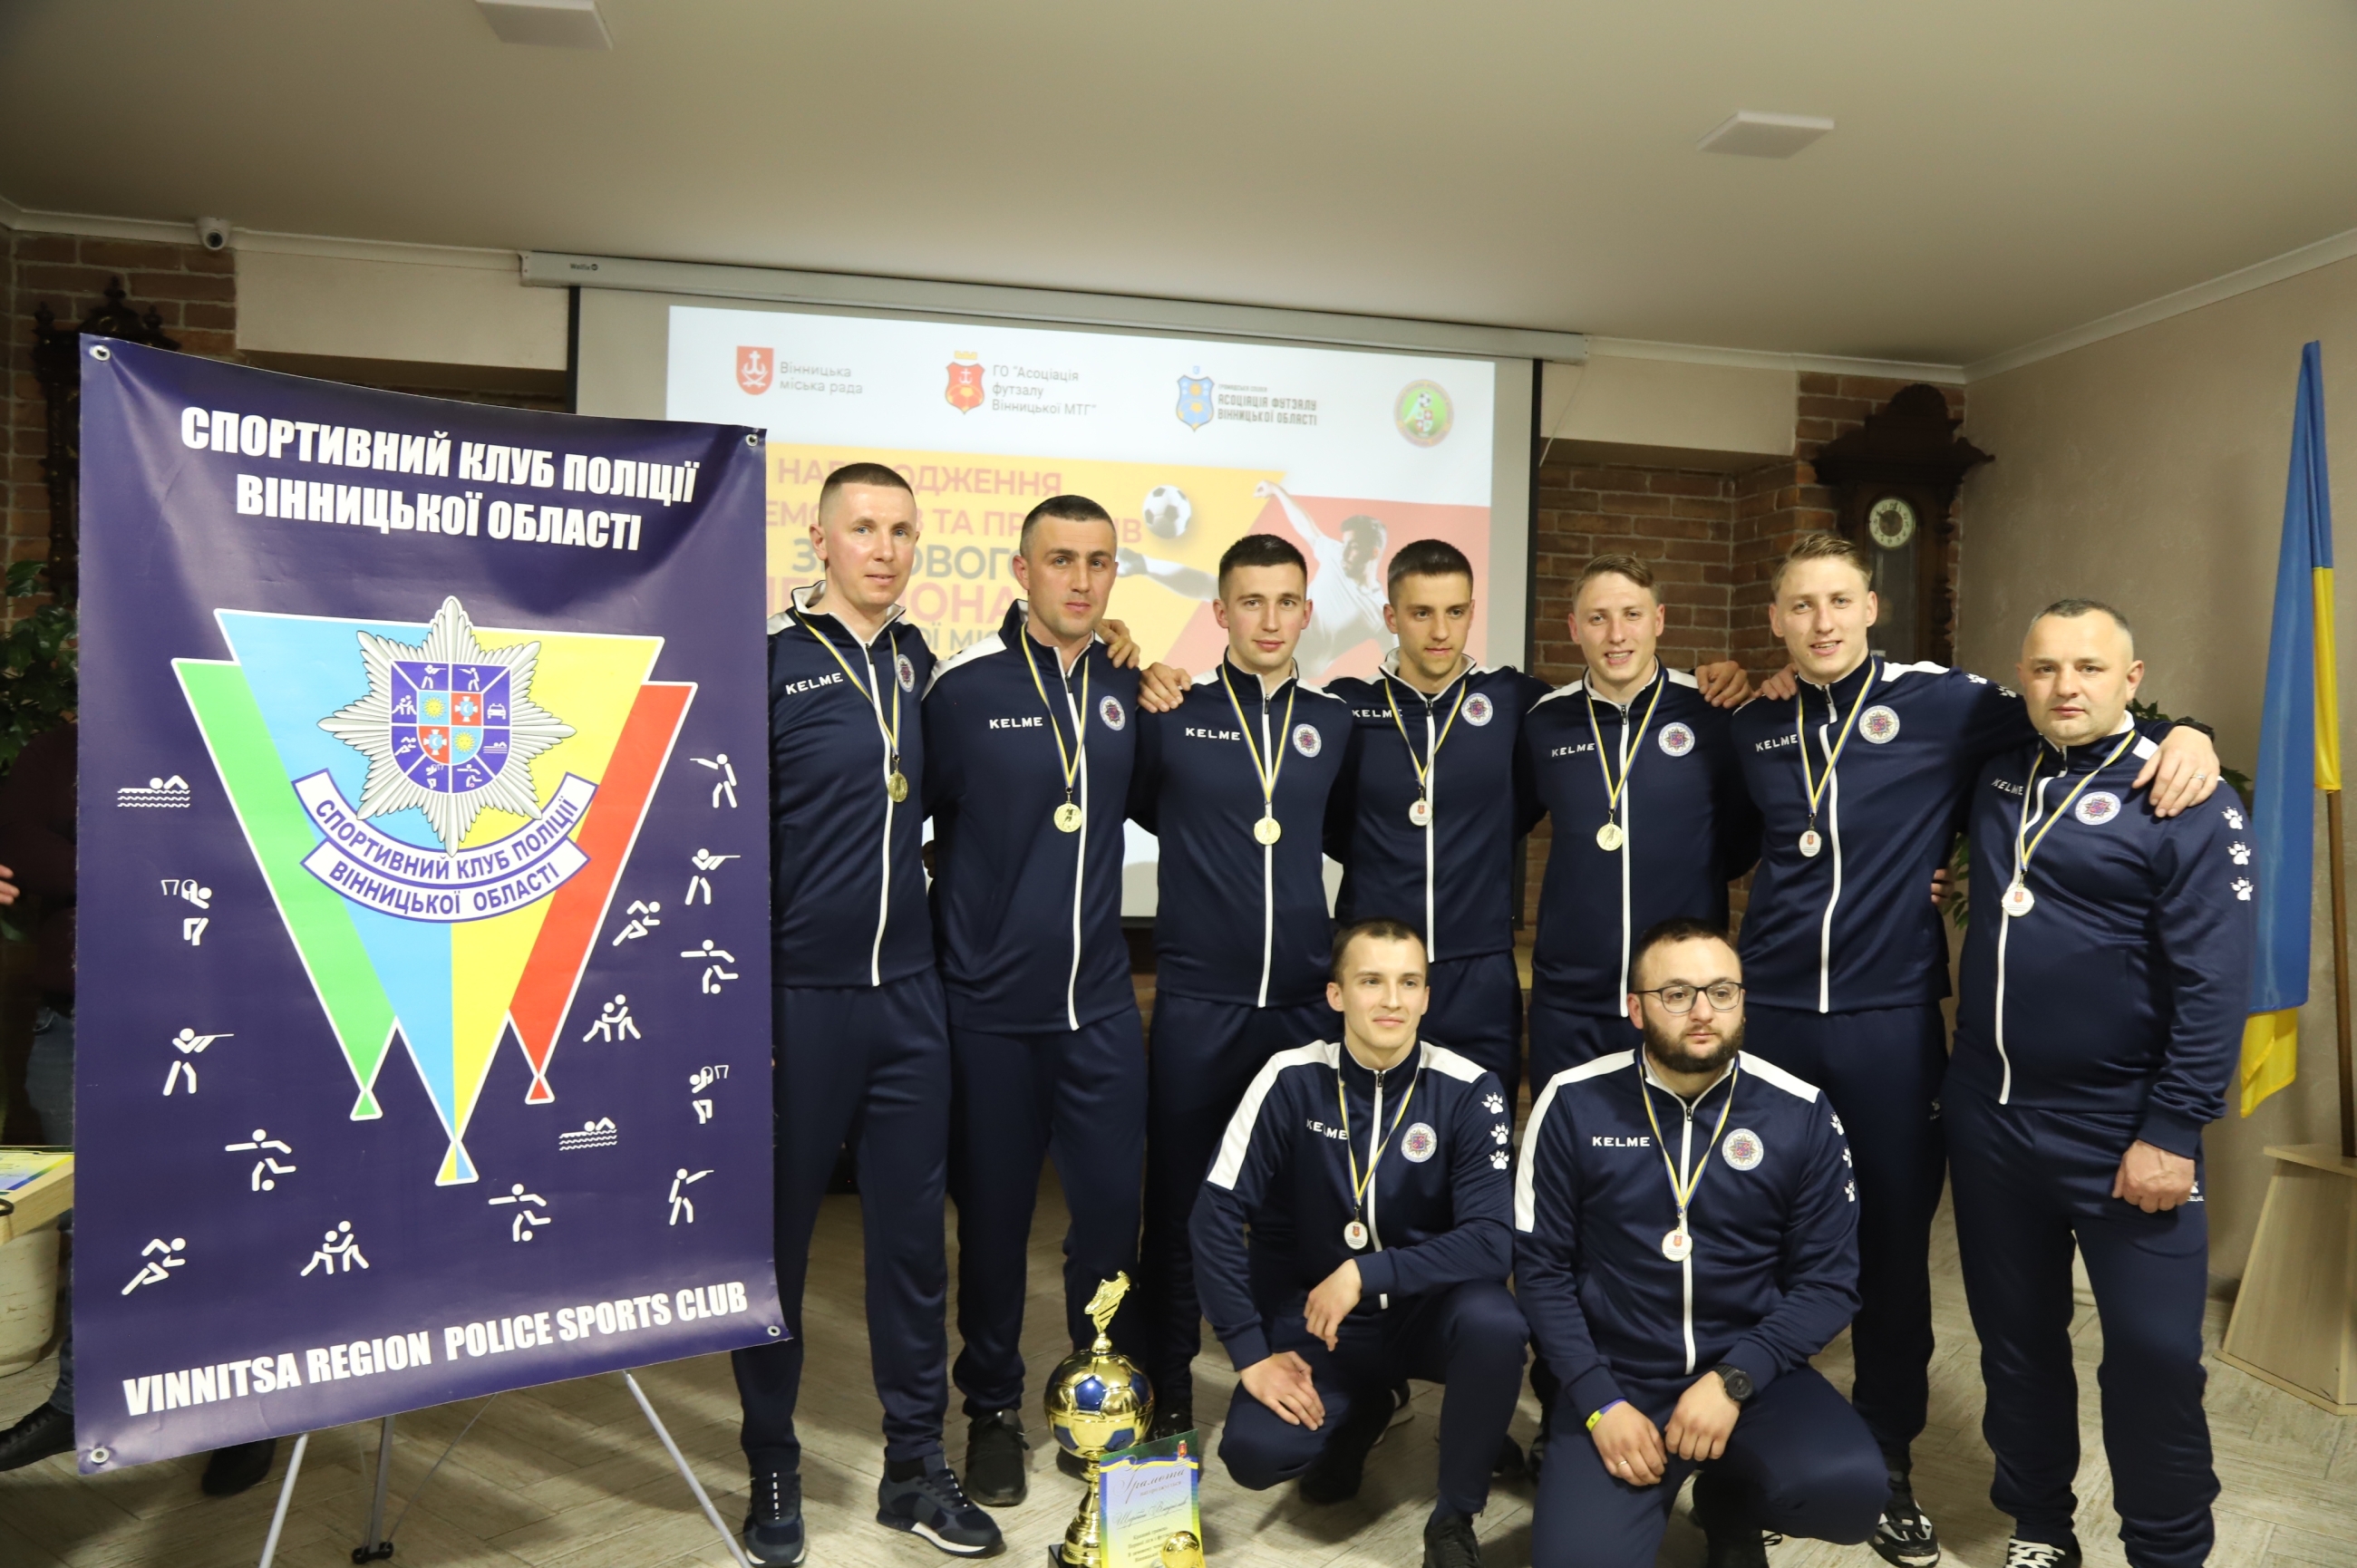 Першість у змаганнях з футзалу здобула поліцейська команда Вінниччини